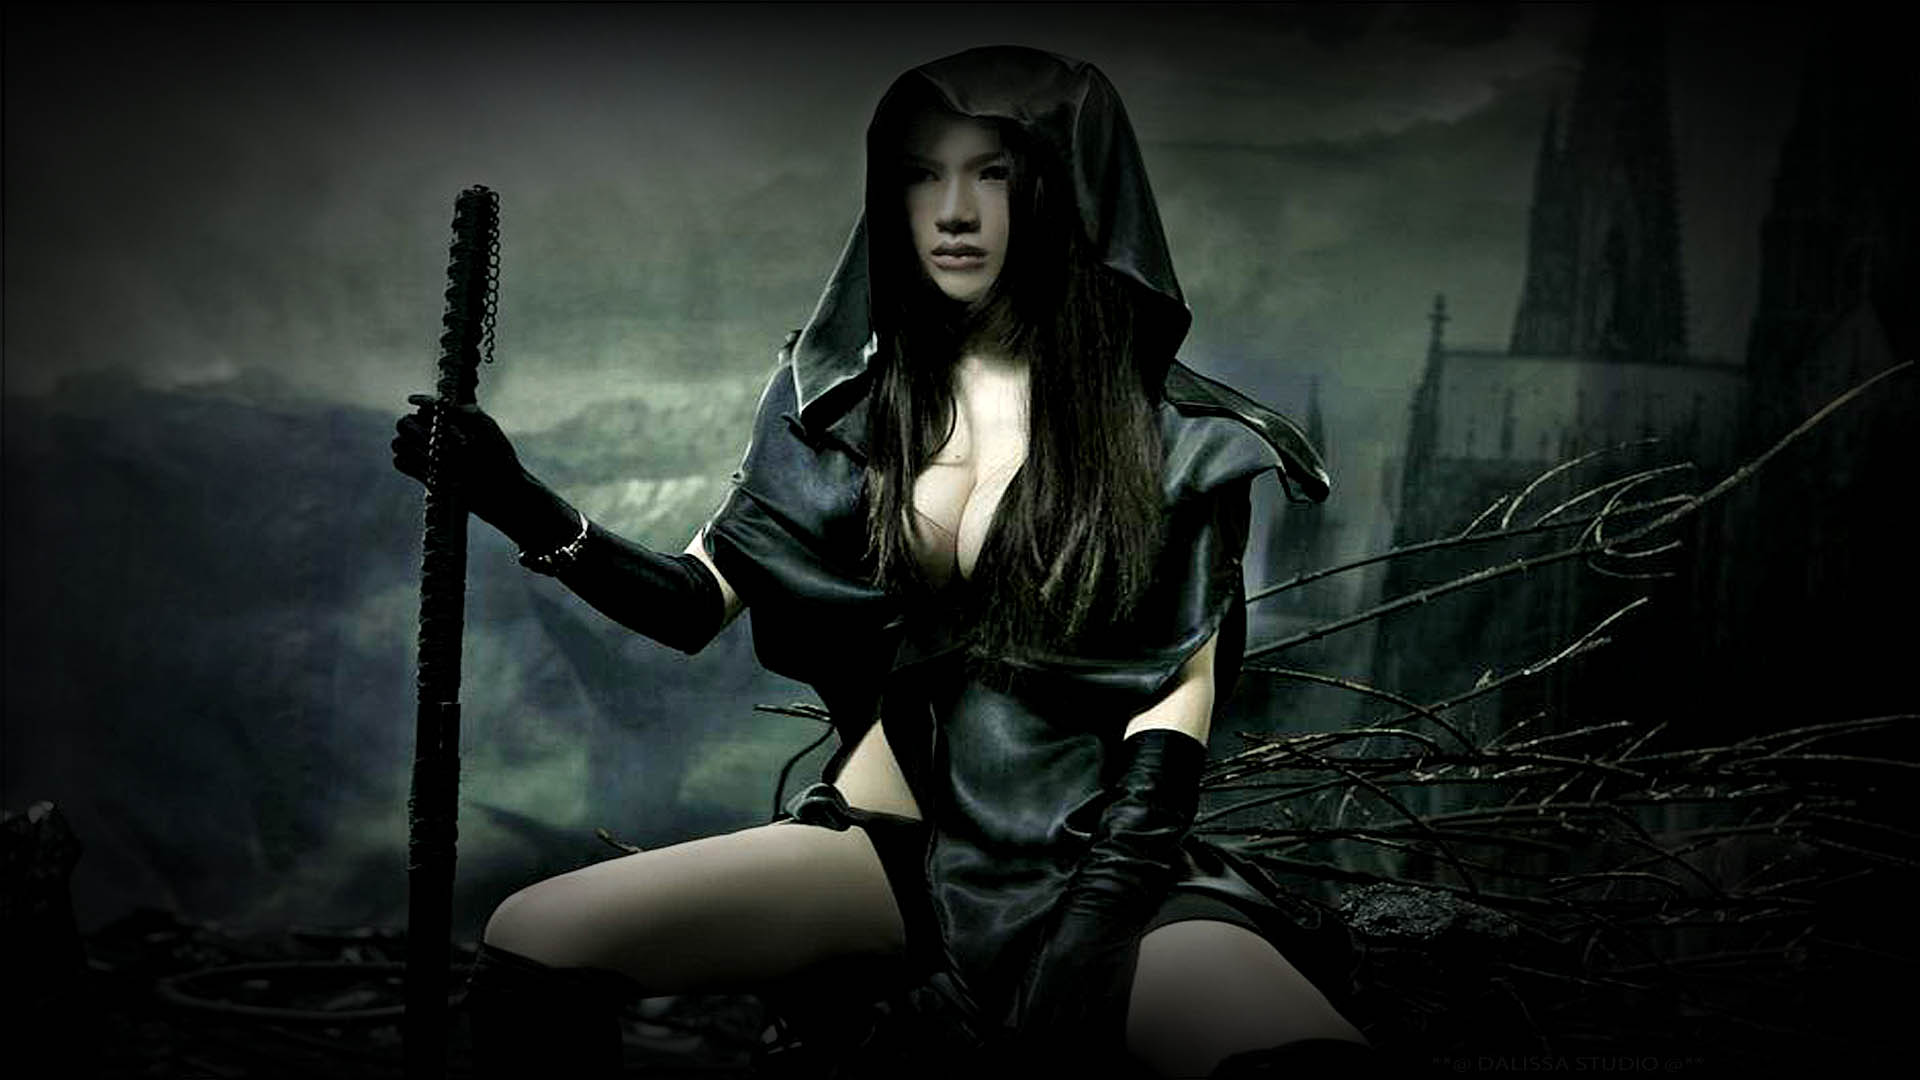 Fantasy Women Warrior Cleacage Hot Sword Gothic M Rk Bakgrund